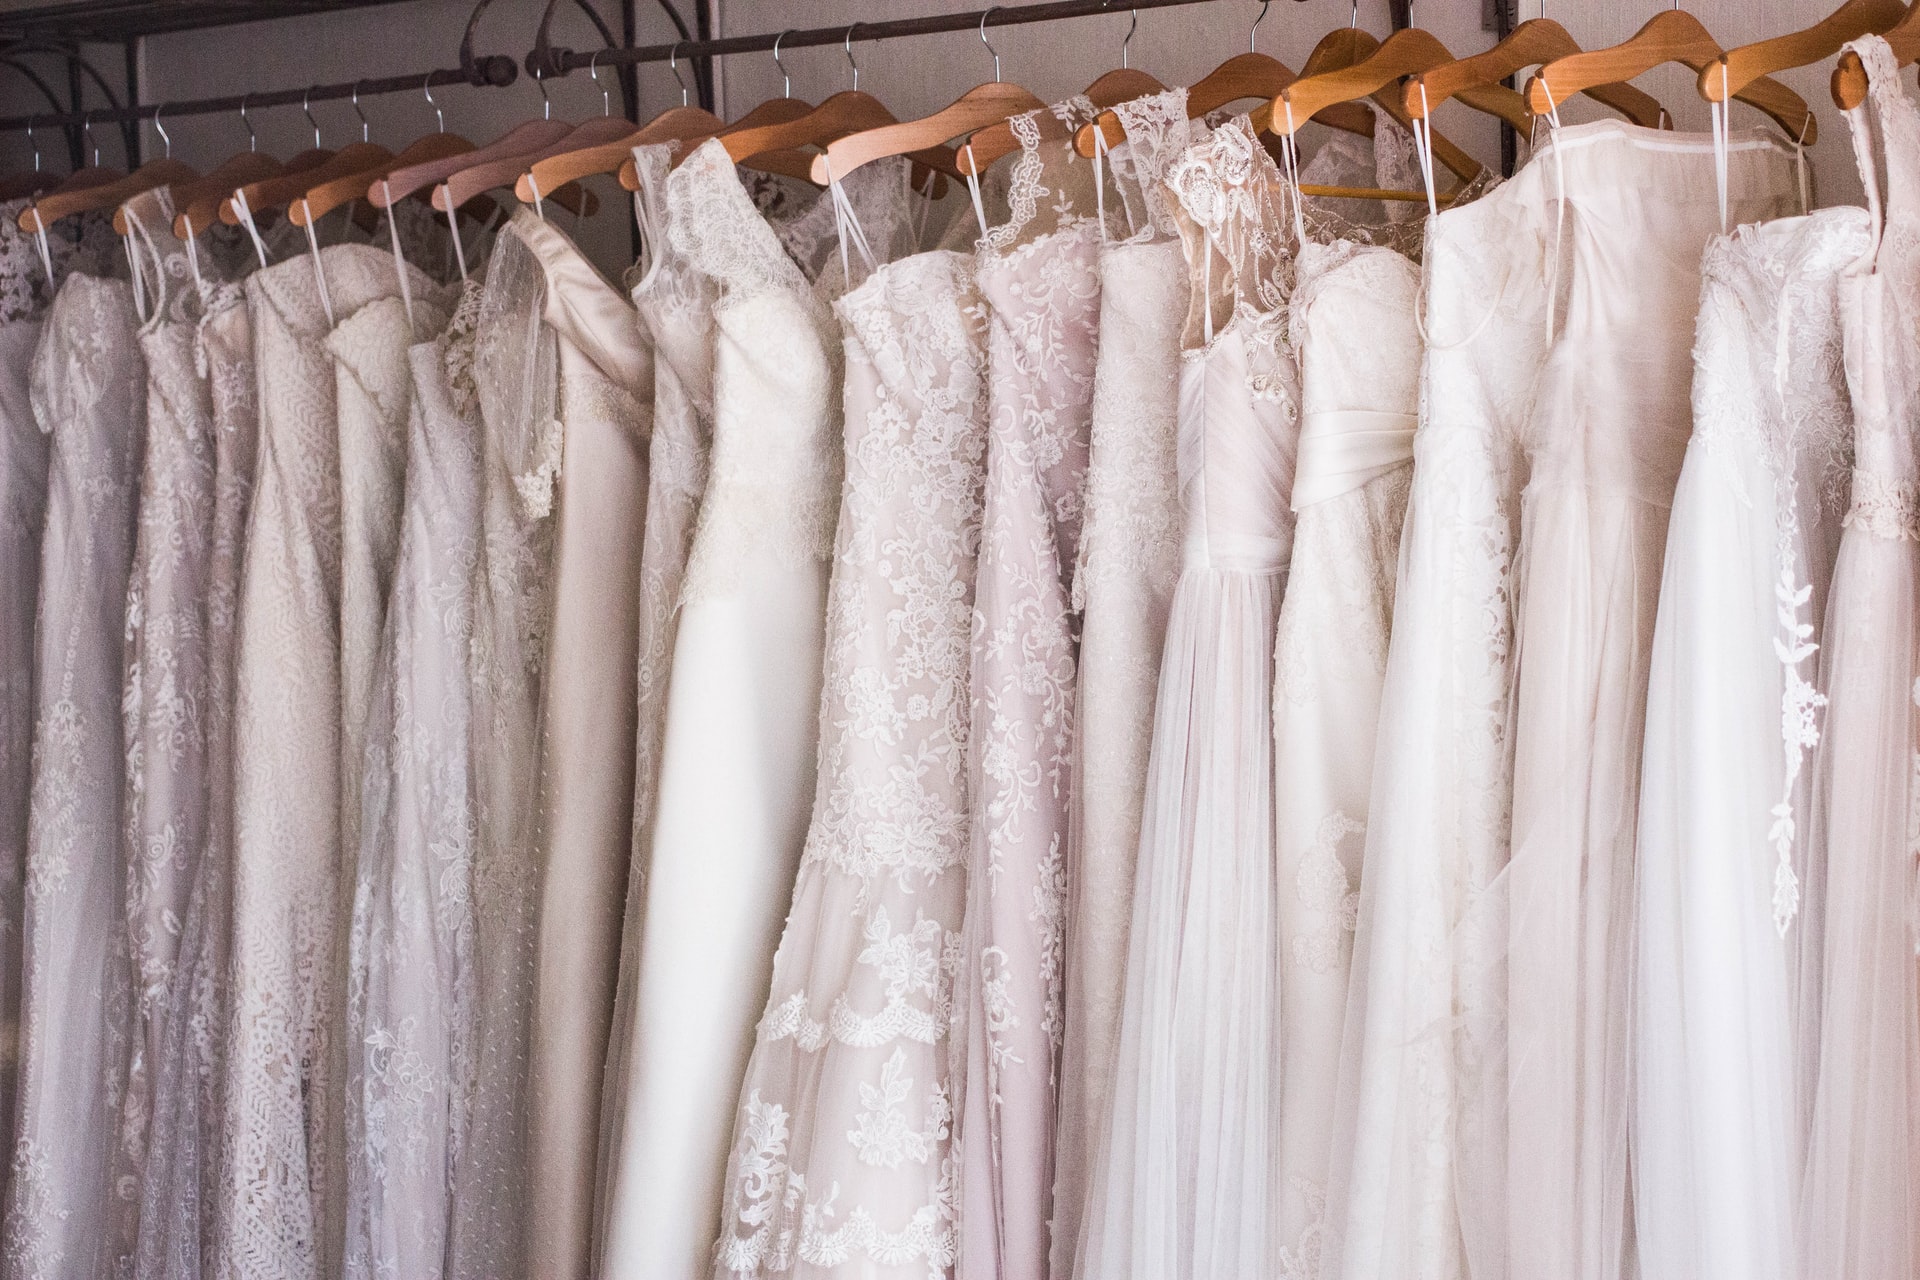 how to start a wedding dress rental business